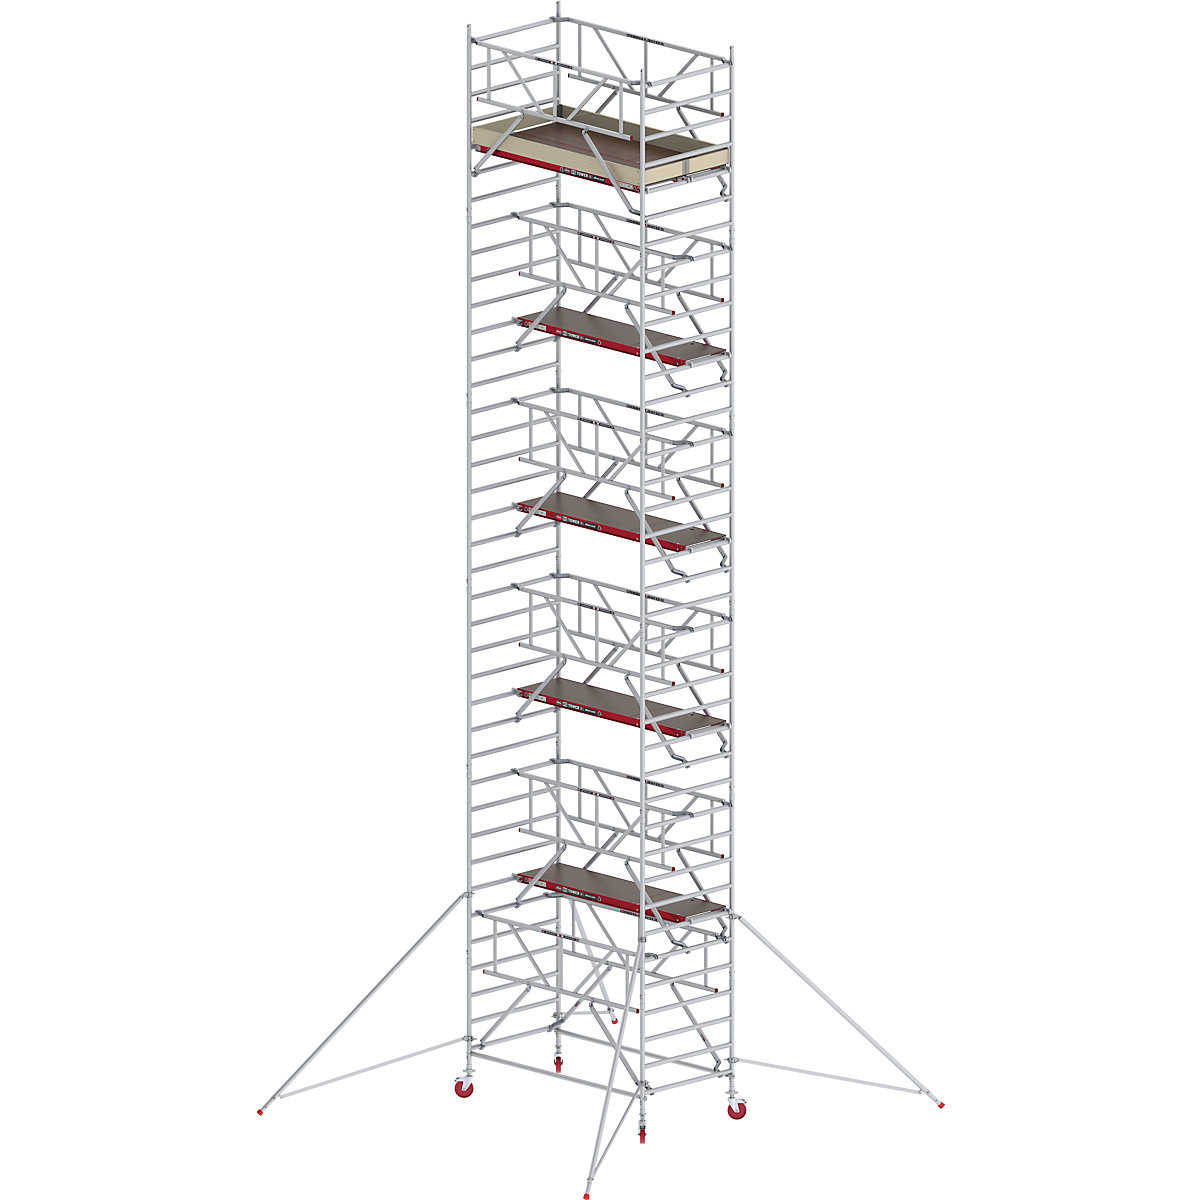 Andaime móvel largo RS TOWER 42 com Safe-Quick® – Altrex, plataforma de madeira, comprimento 2,45 m, altura de trabalho 12,2 m-10